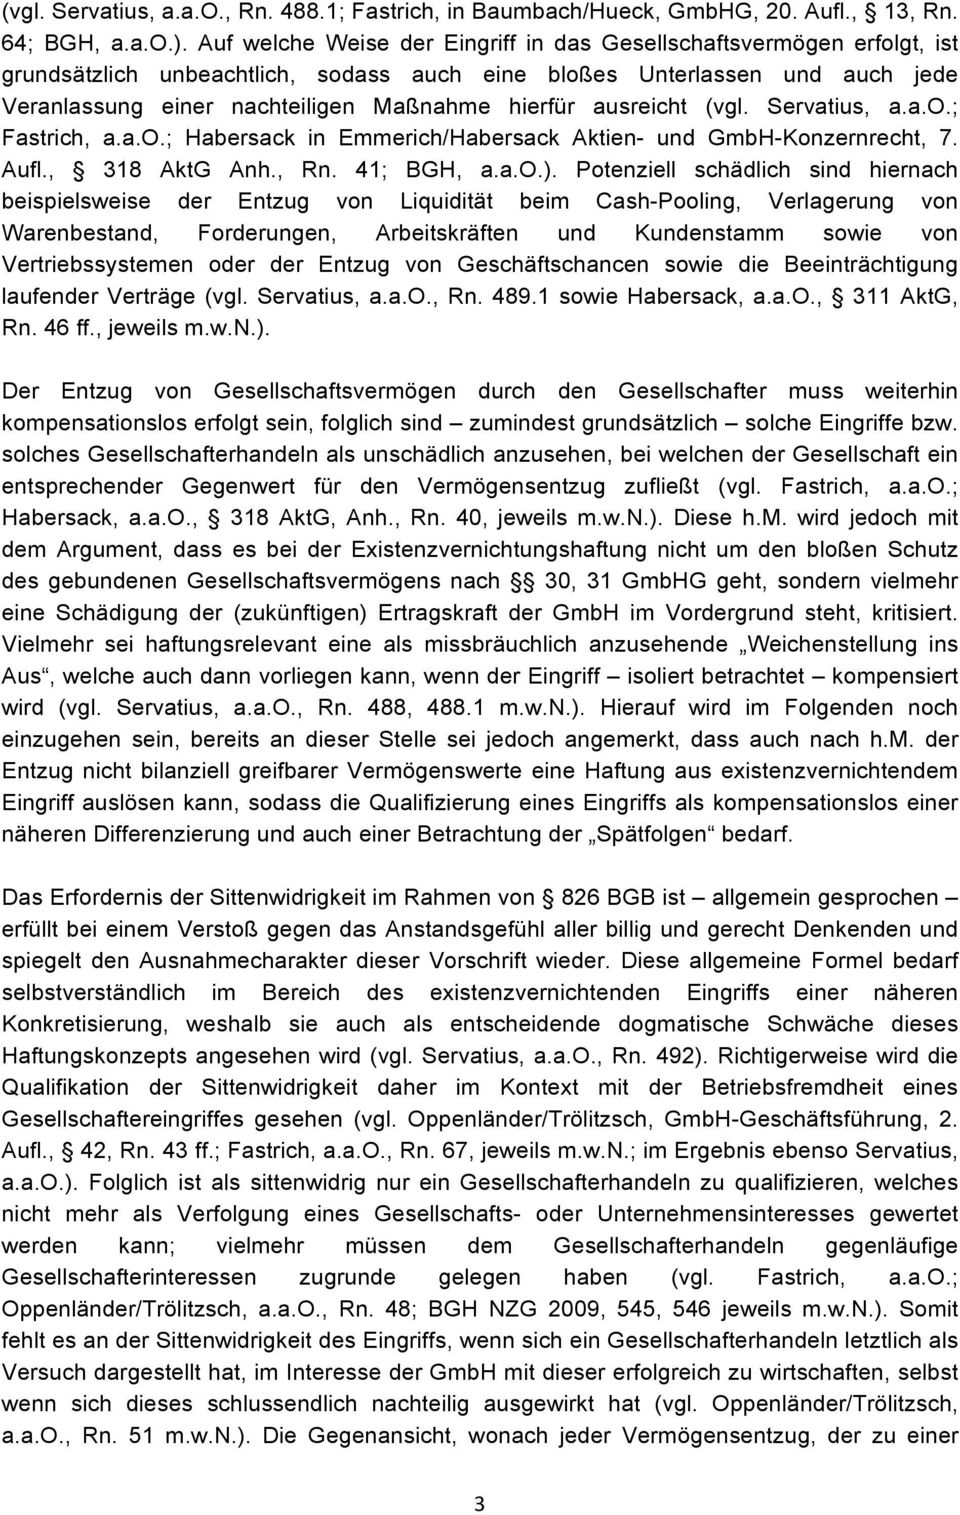 ausreicht (vgl. Servatius, a.a.o.; Fastrich, a.a.o.; Habersack in Emmerich/Habersack Aktien- und GmbH-Konzernrecht, 7. Aufl., 318 AktG Anh., Rn. 41; BGH, a.a.o.).